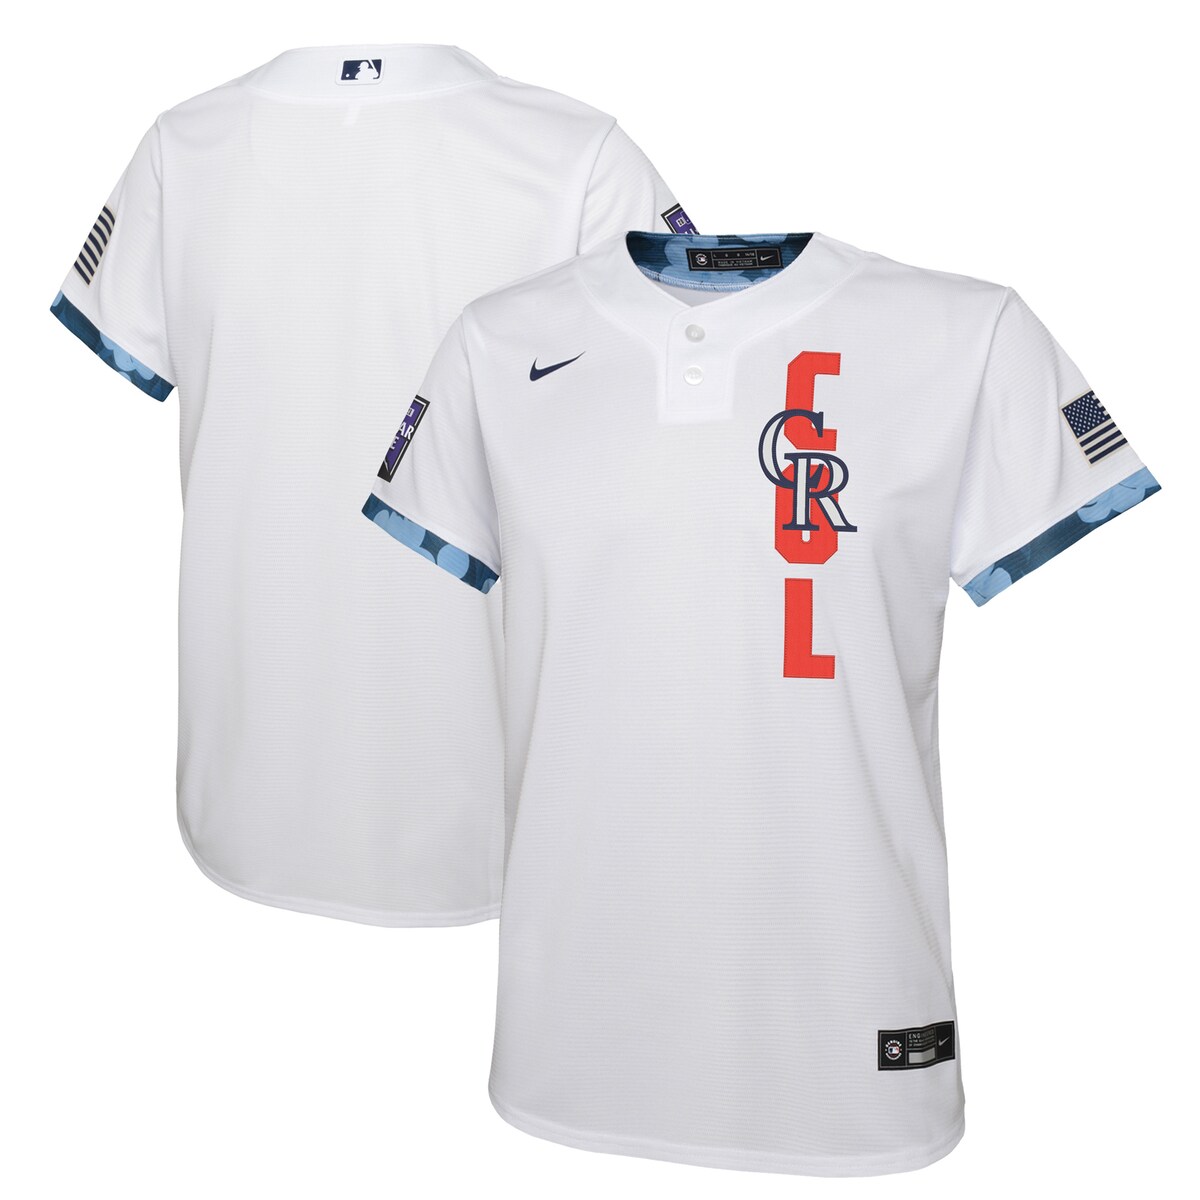 MLB ロッキーズ ユニフォーム Nike ナイキ キッズ ホワイト (Youth Nike MLB 2021 ASG Team Jerseys)